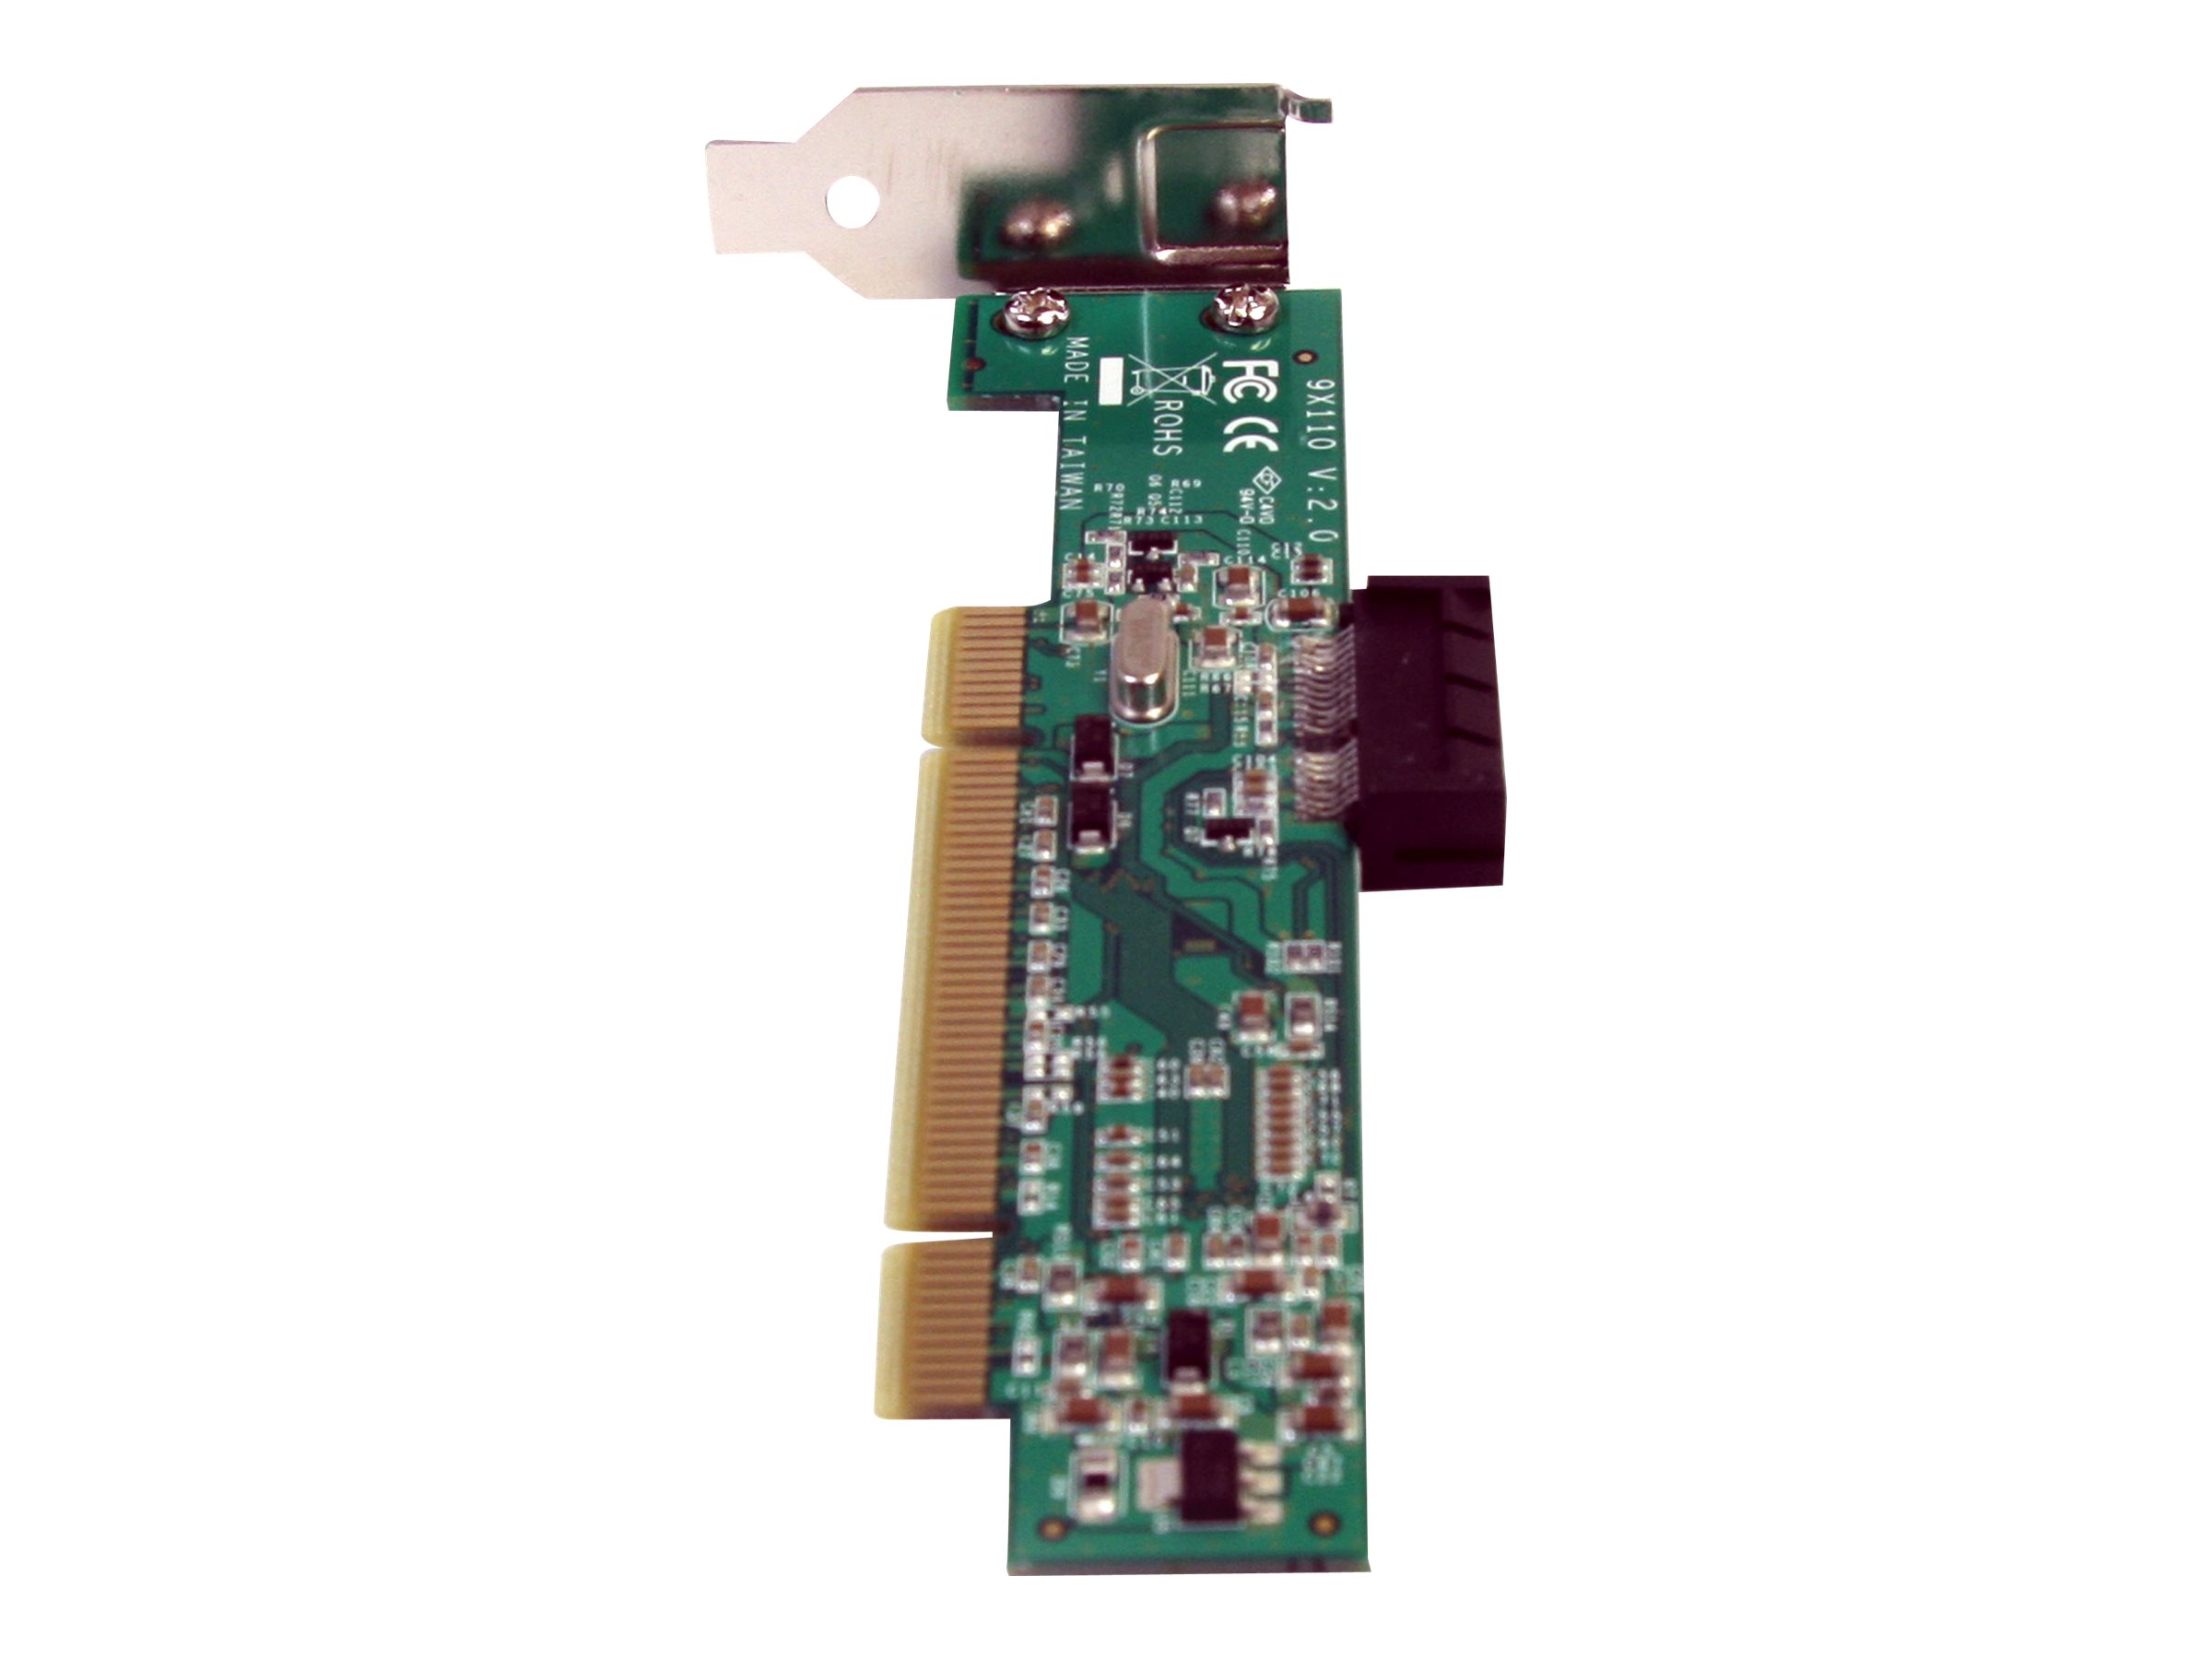 StarTech.com PCI auf PCI Express Adapter - PCI zu PCIe Karte